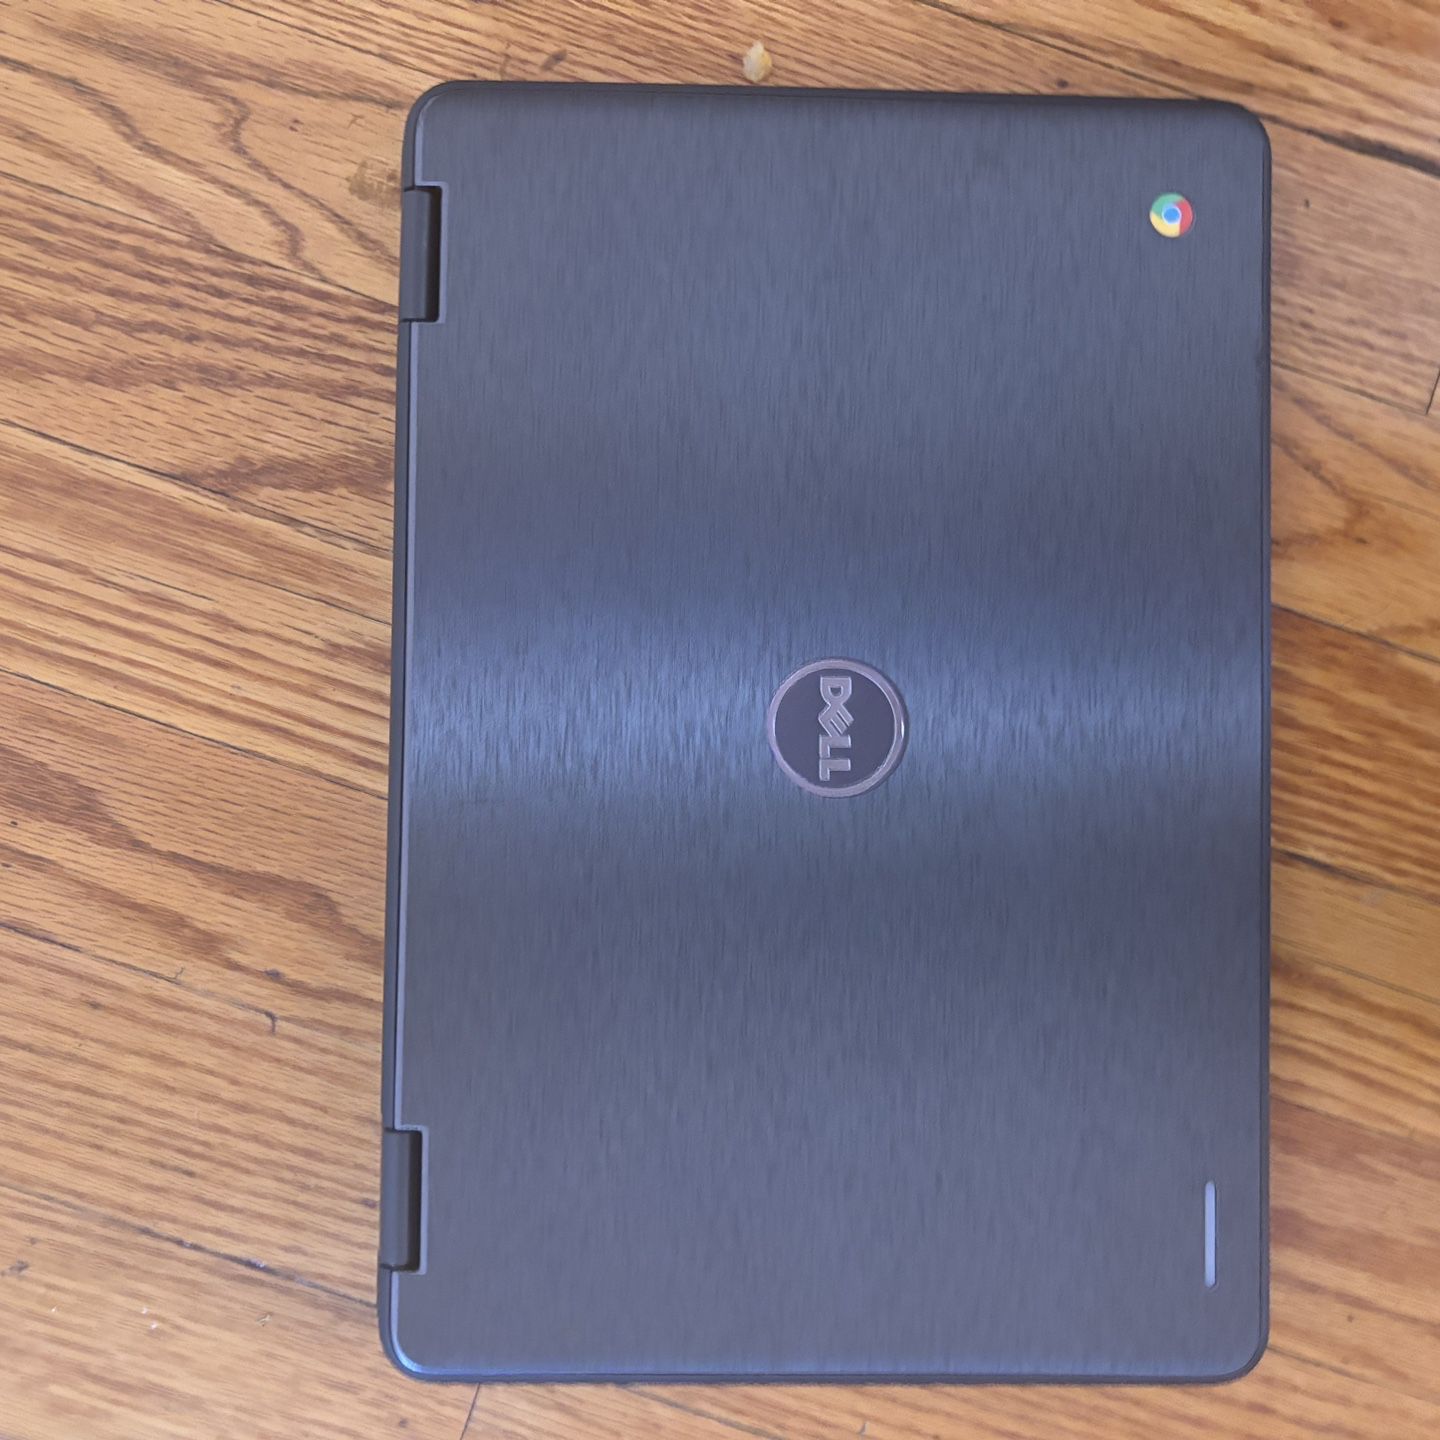 Dell Chromebook 3189